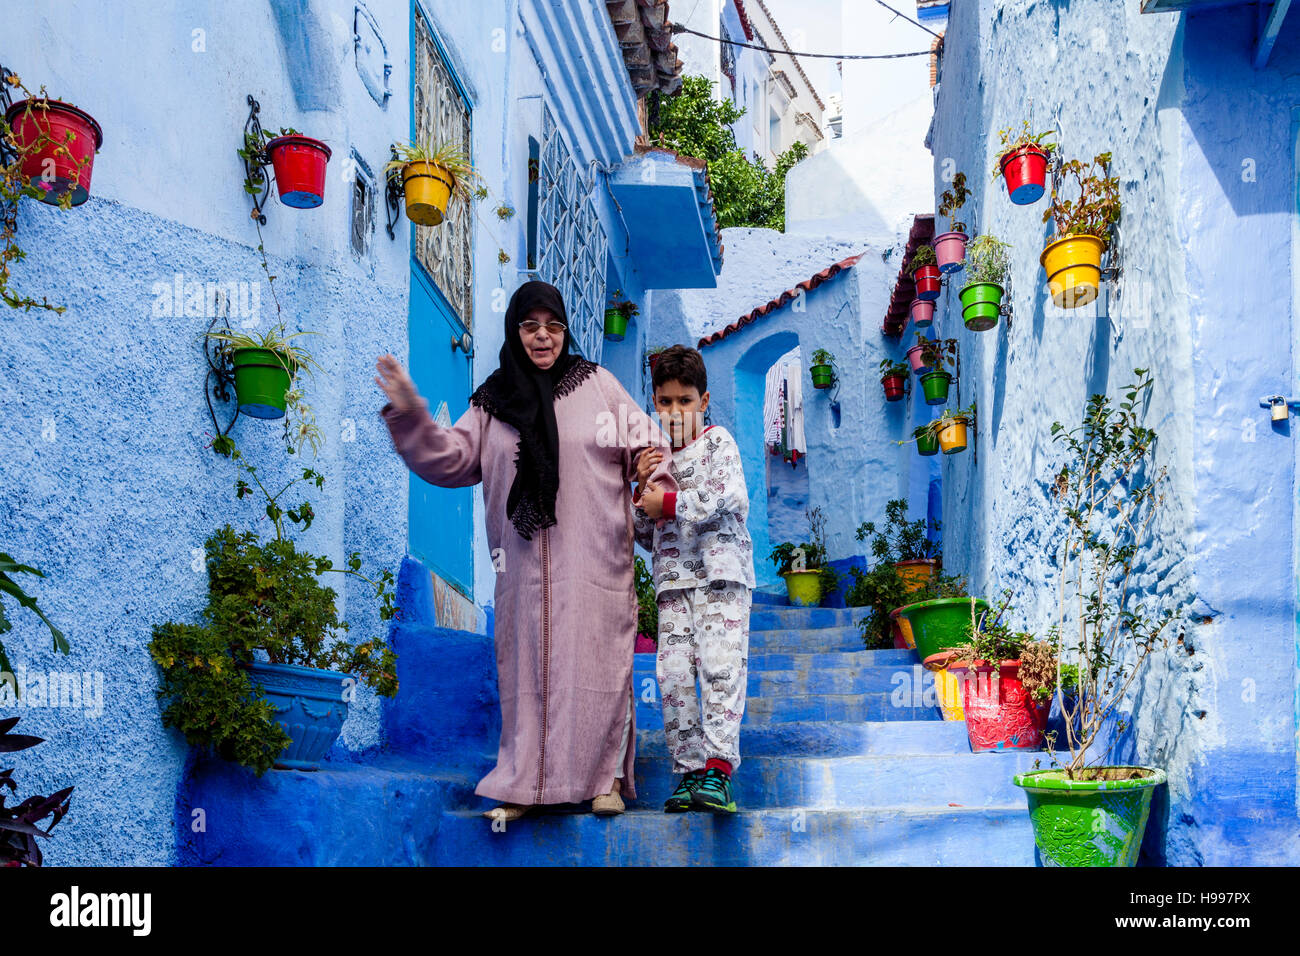 Un giovane ragazzo aiuta una signora anziana giù alcuni passi in una strada nella Medina, Chefchaouen, Marocco Foto Stock